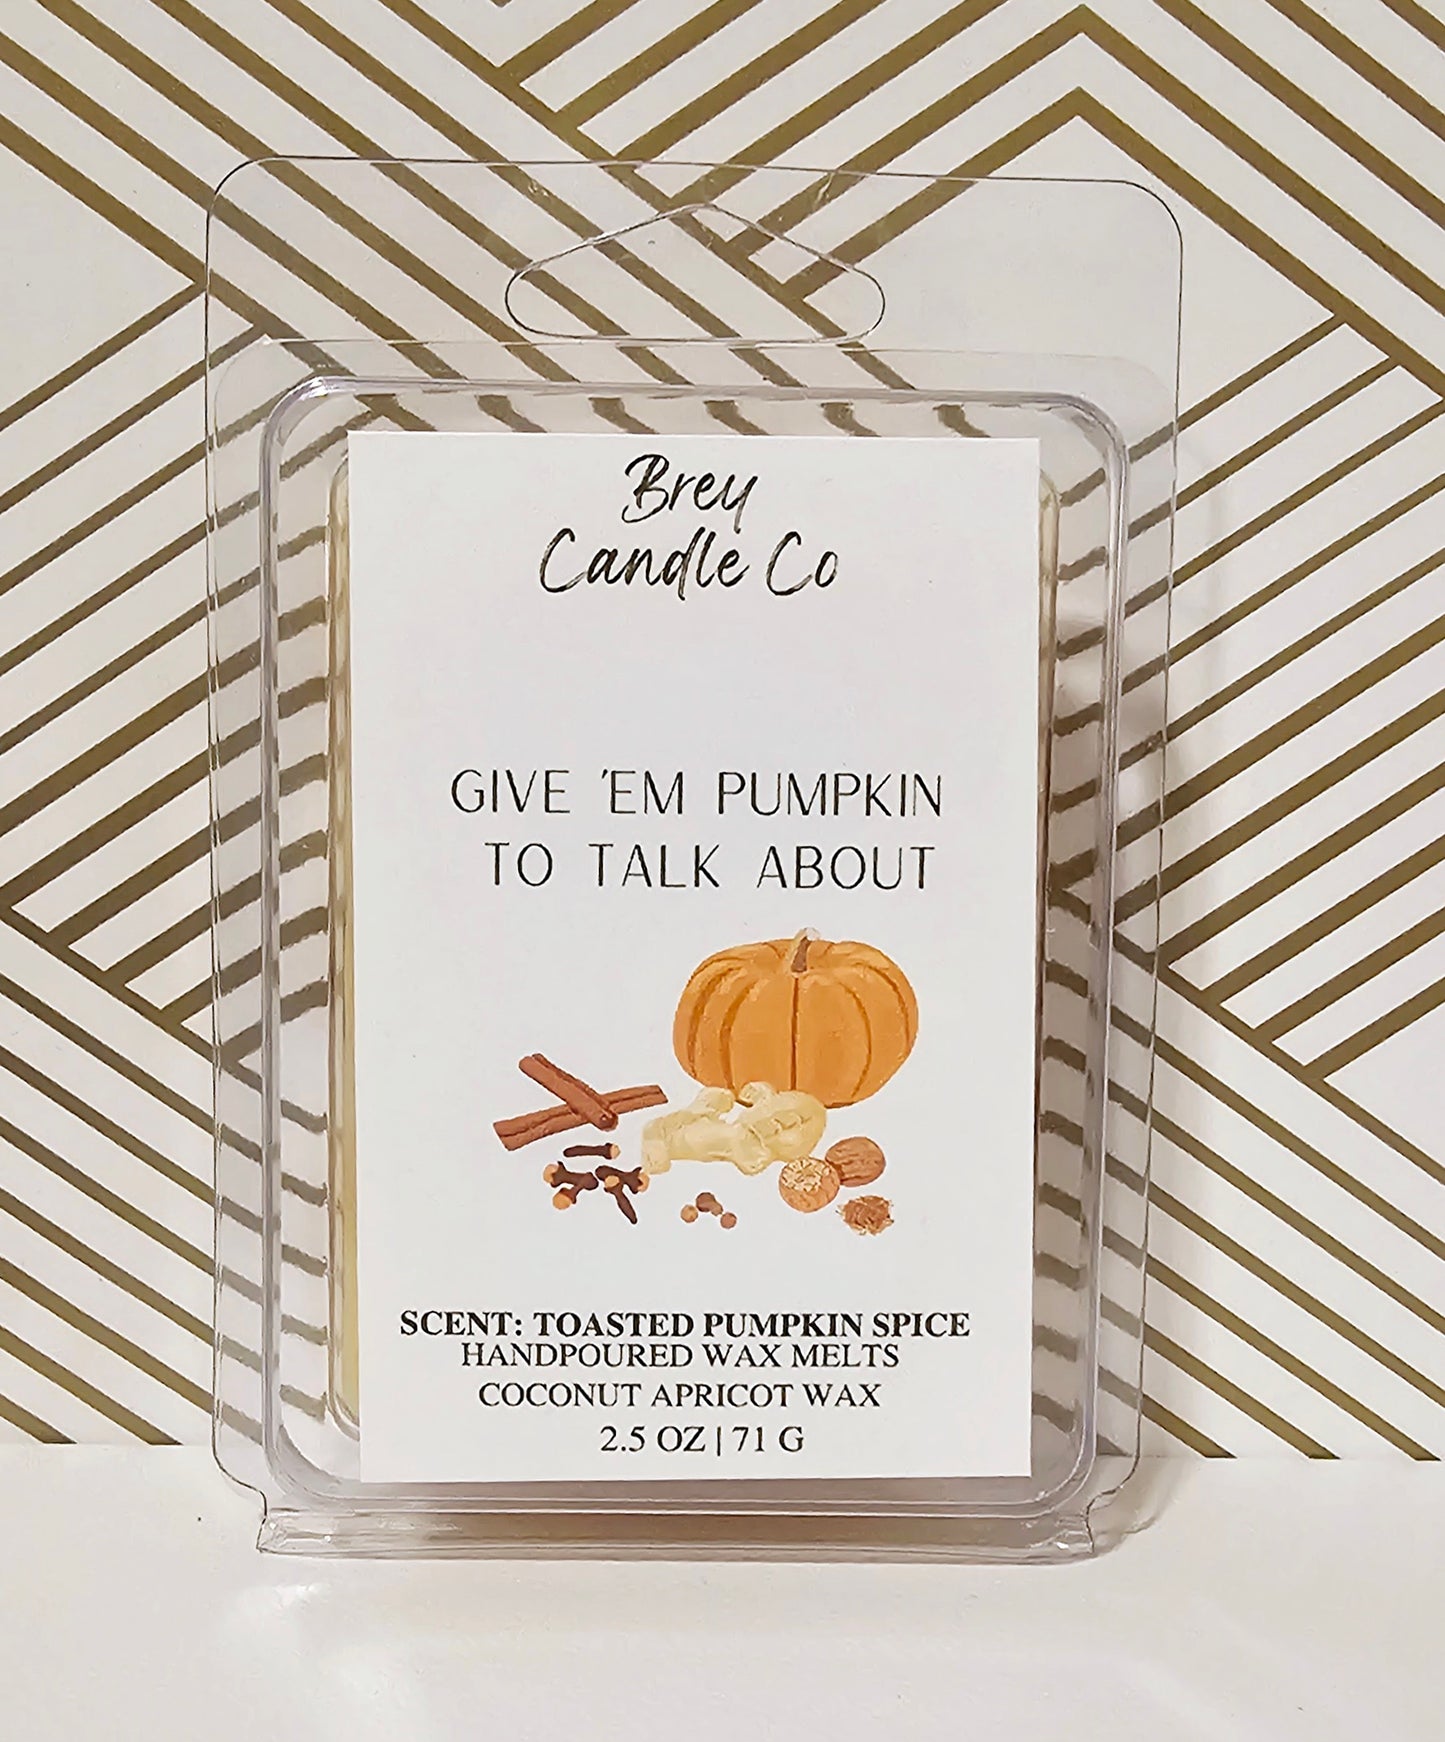 Give 'em pumpkin to talk about Wax Melts